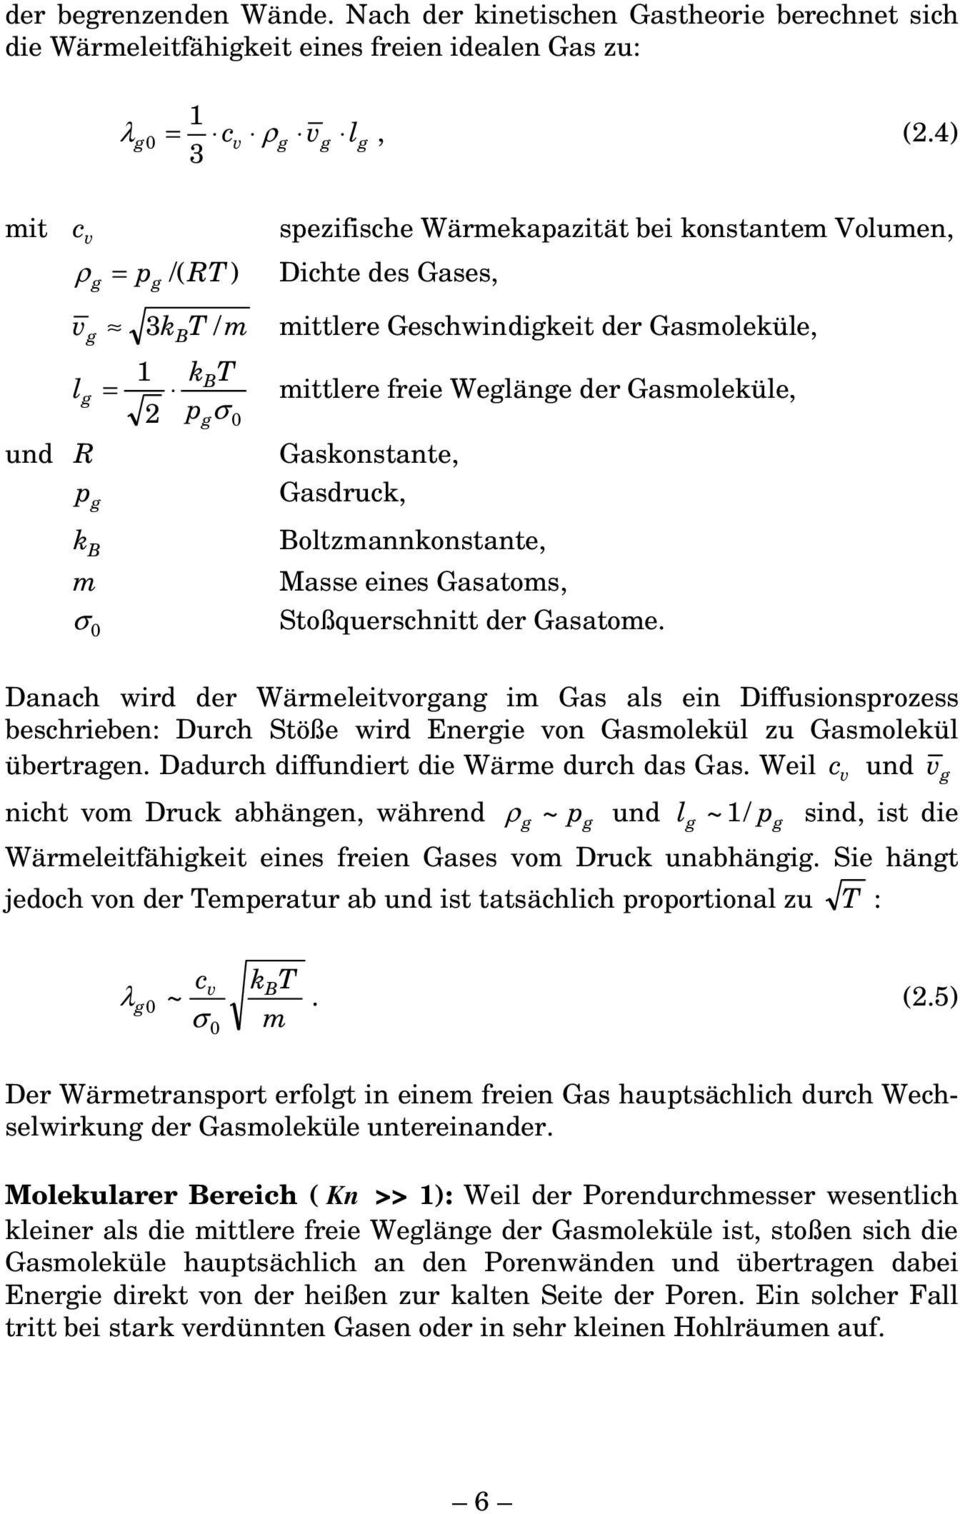 Gasmoleküle, und R Gaskonstante, pg Gasduck, kb Boltzmannkonstante, m Masse eines Gasatoms, Stoßqueschnitt de Gasatome.